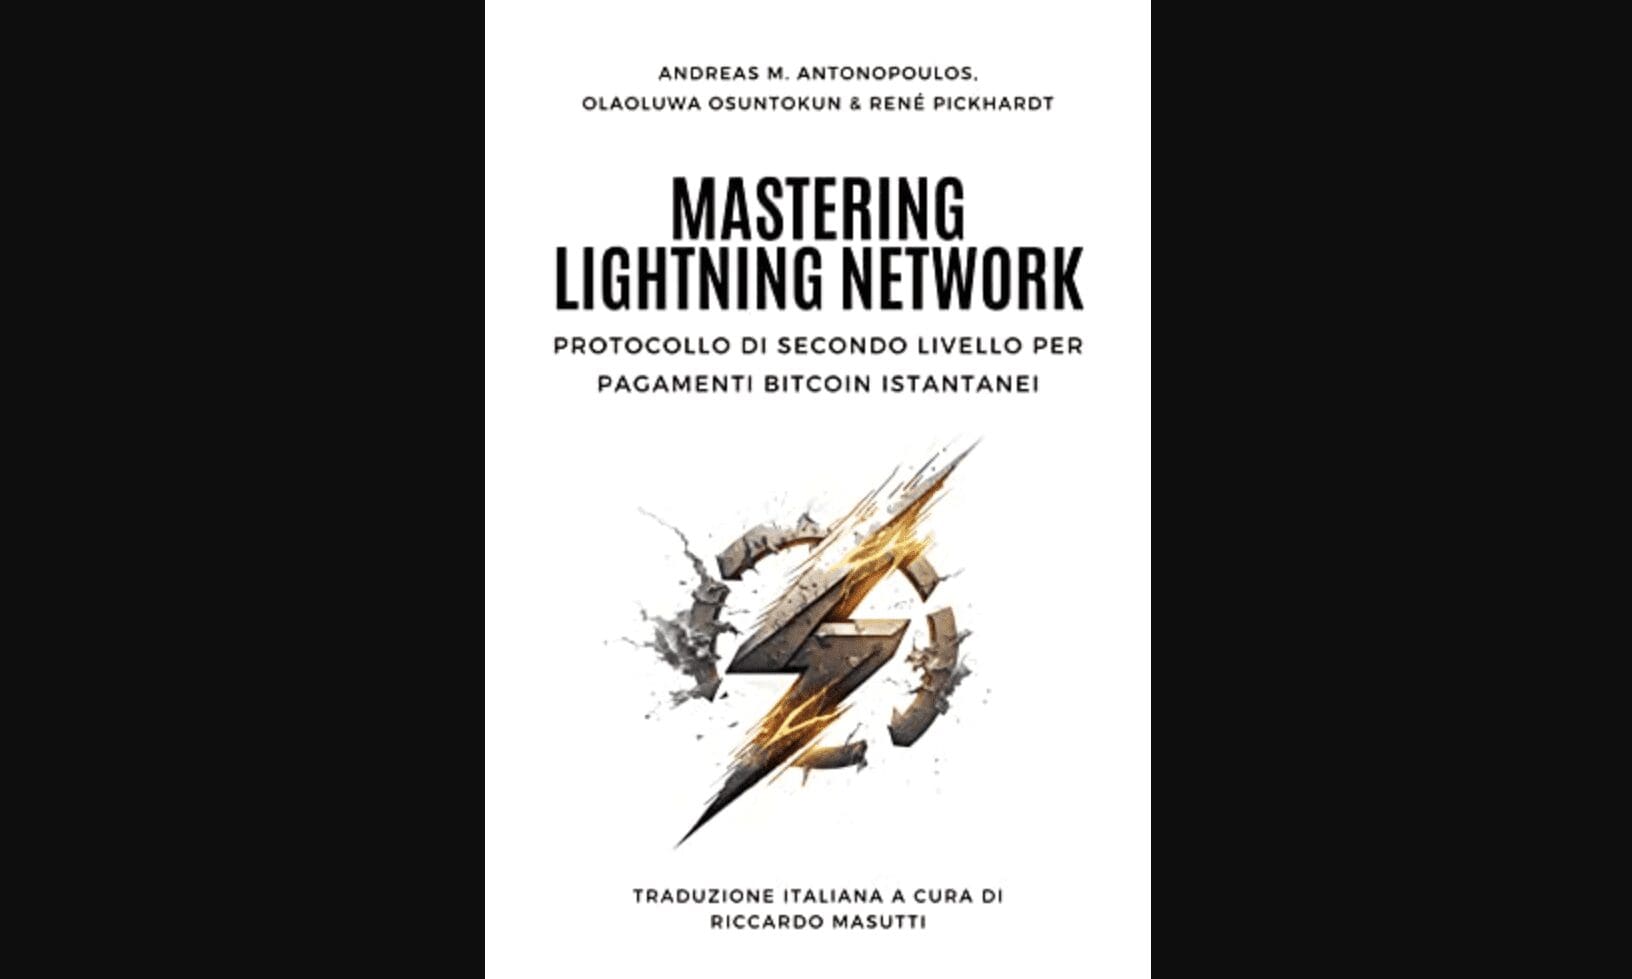 Mastering Lightning Network in Italiano è finalmente disponibile!